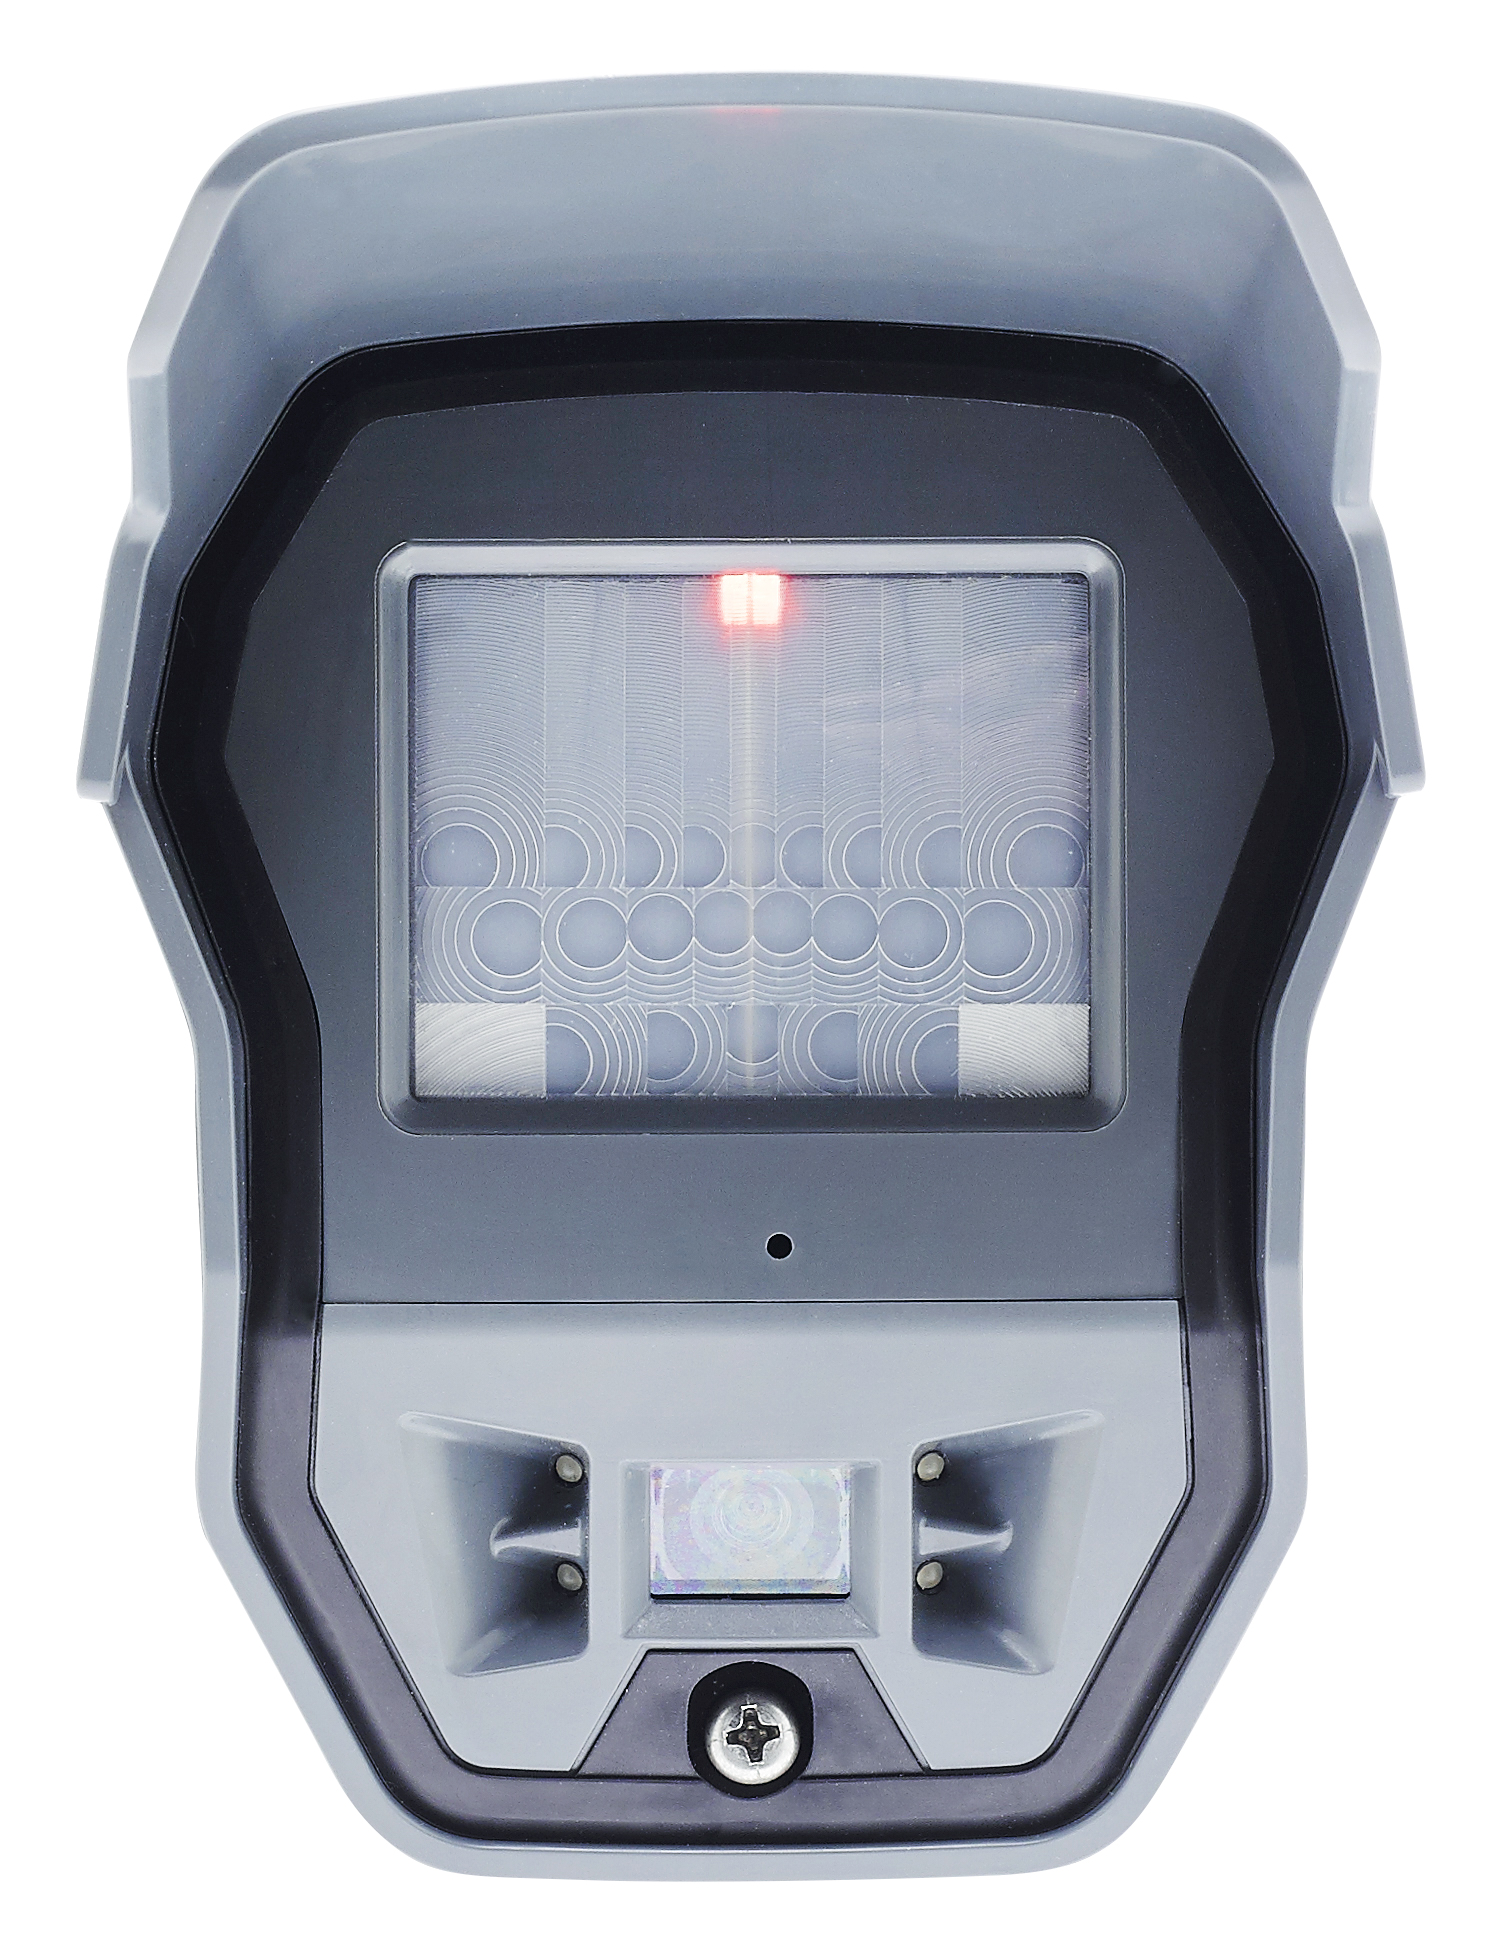 Bezdrátový PIR detektor s kamerou OMV 210 <p>Bezdr&aacute;tov&yacute; venkovn&iacute; pohybov&yacute; PIR detektor s barevnou kamerou</p>